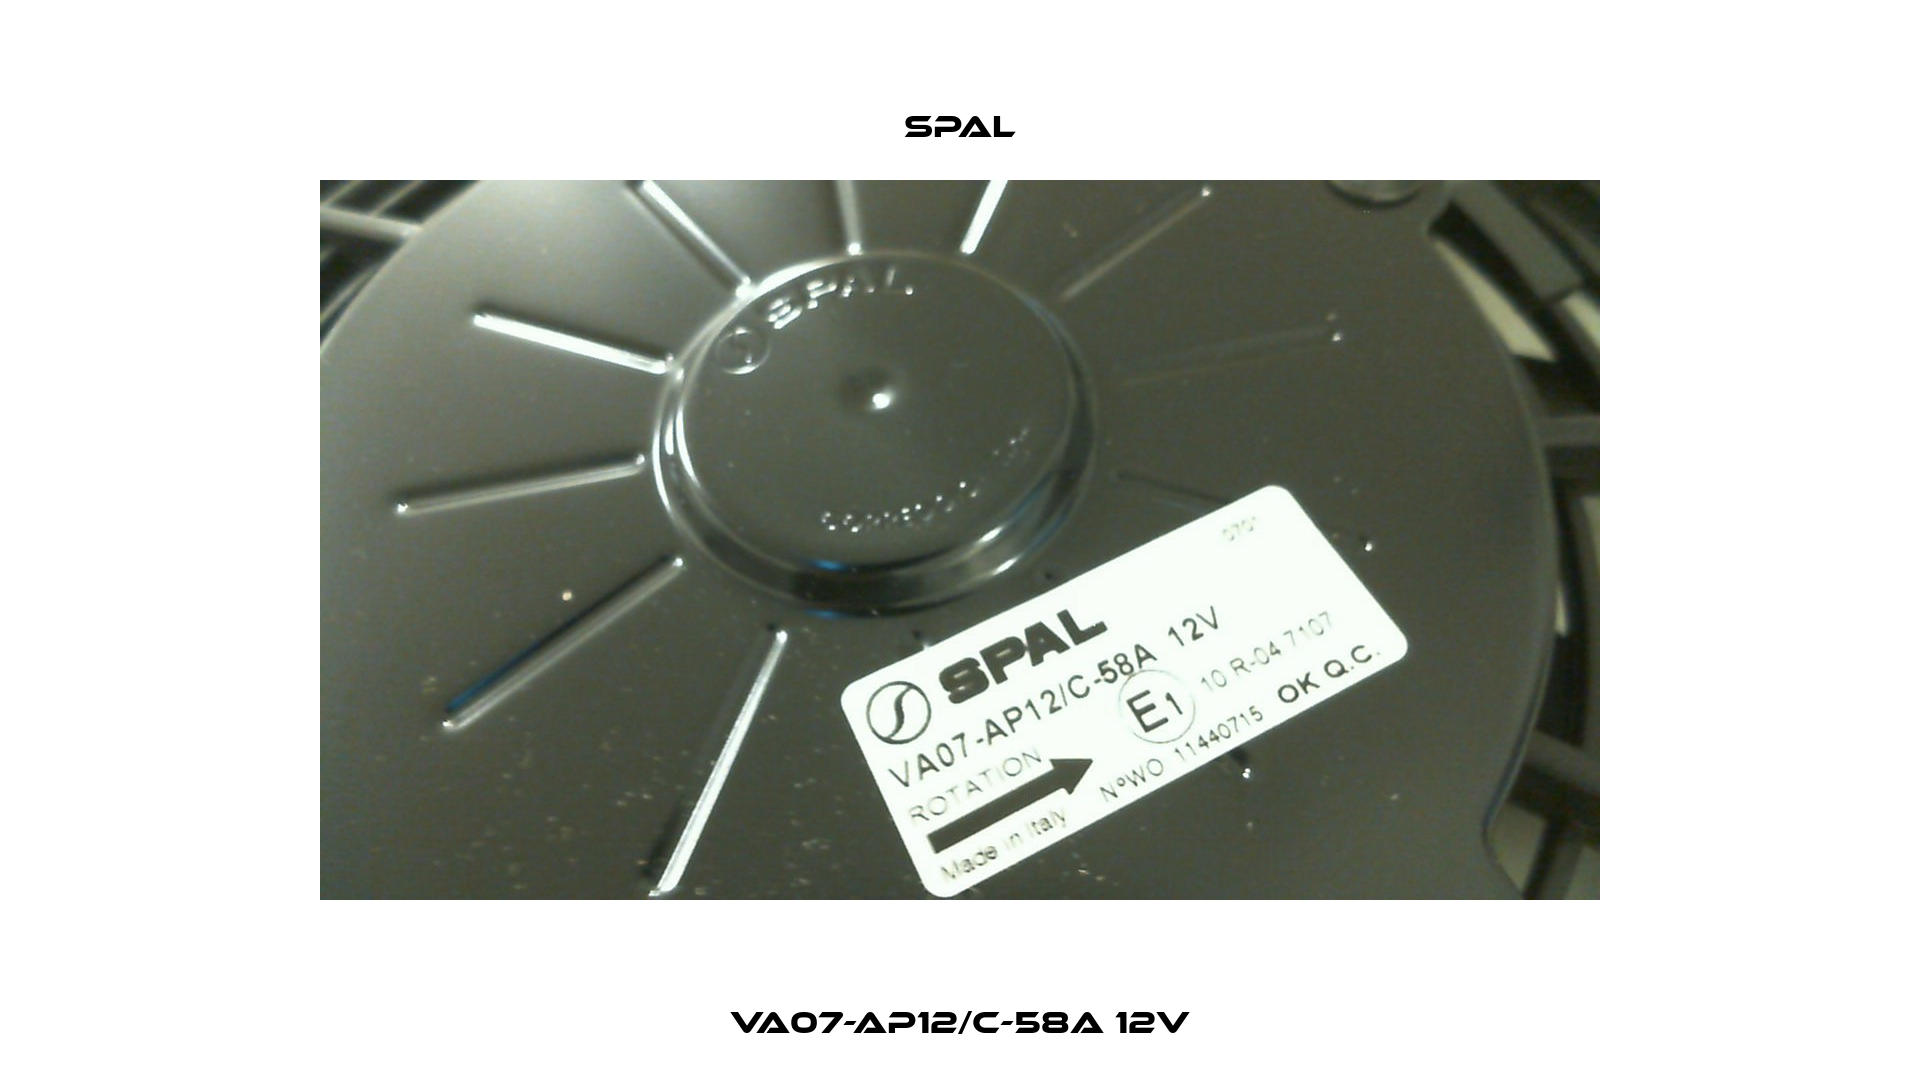 VA07-AP12/C-58A 12V SPAL